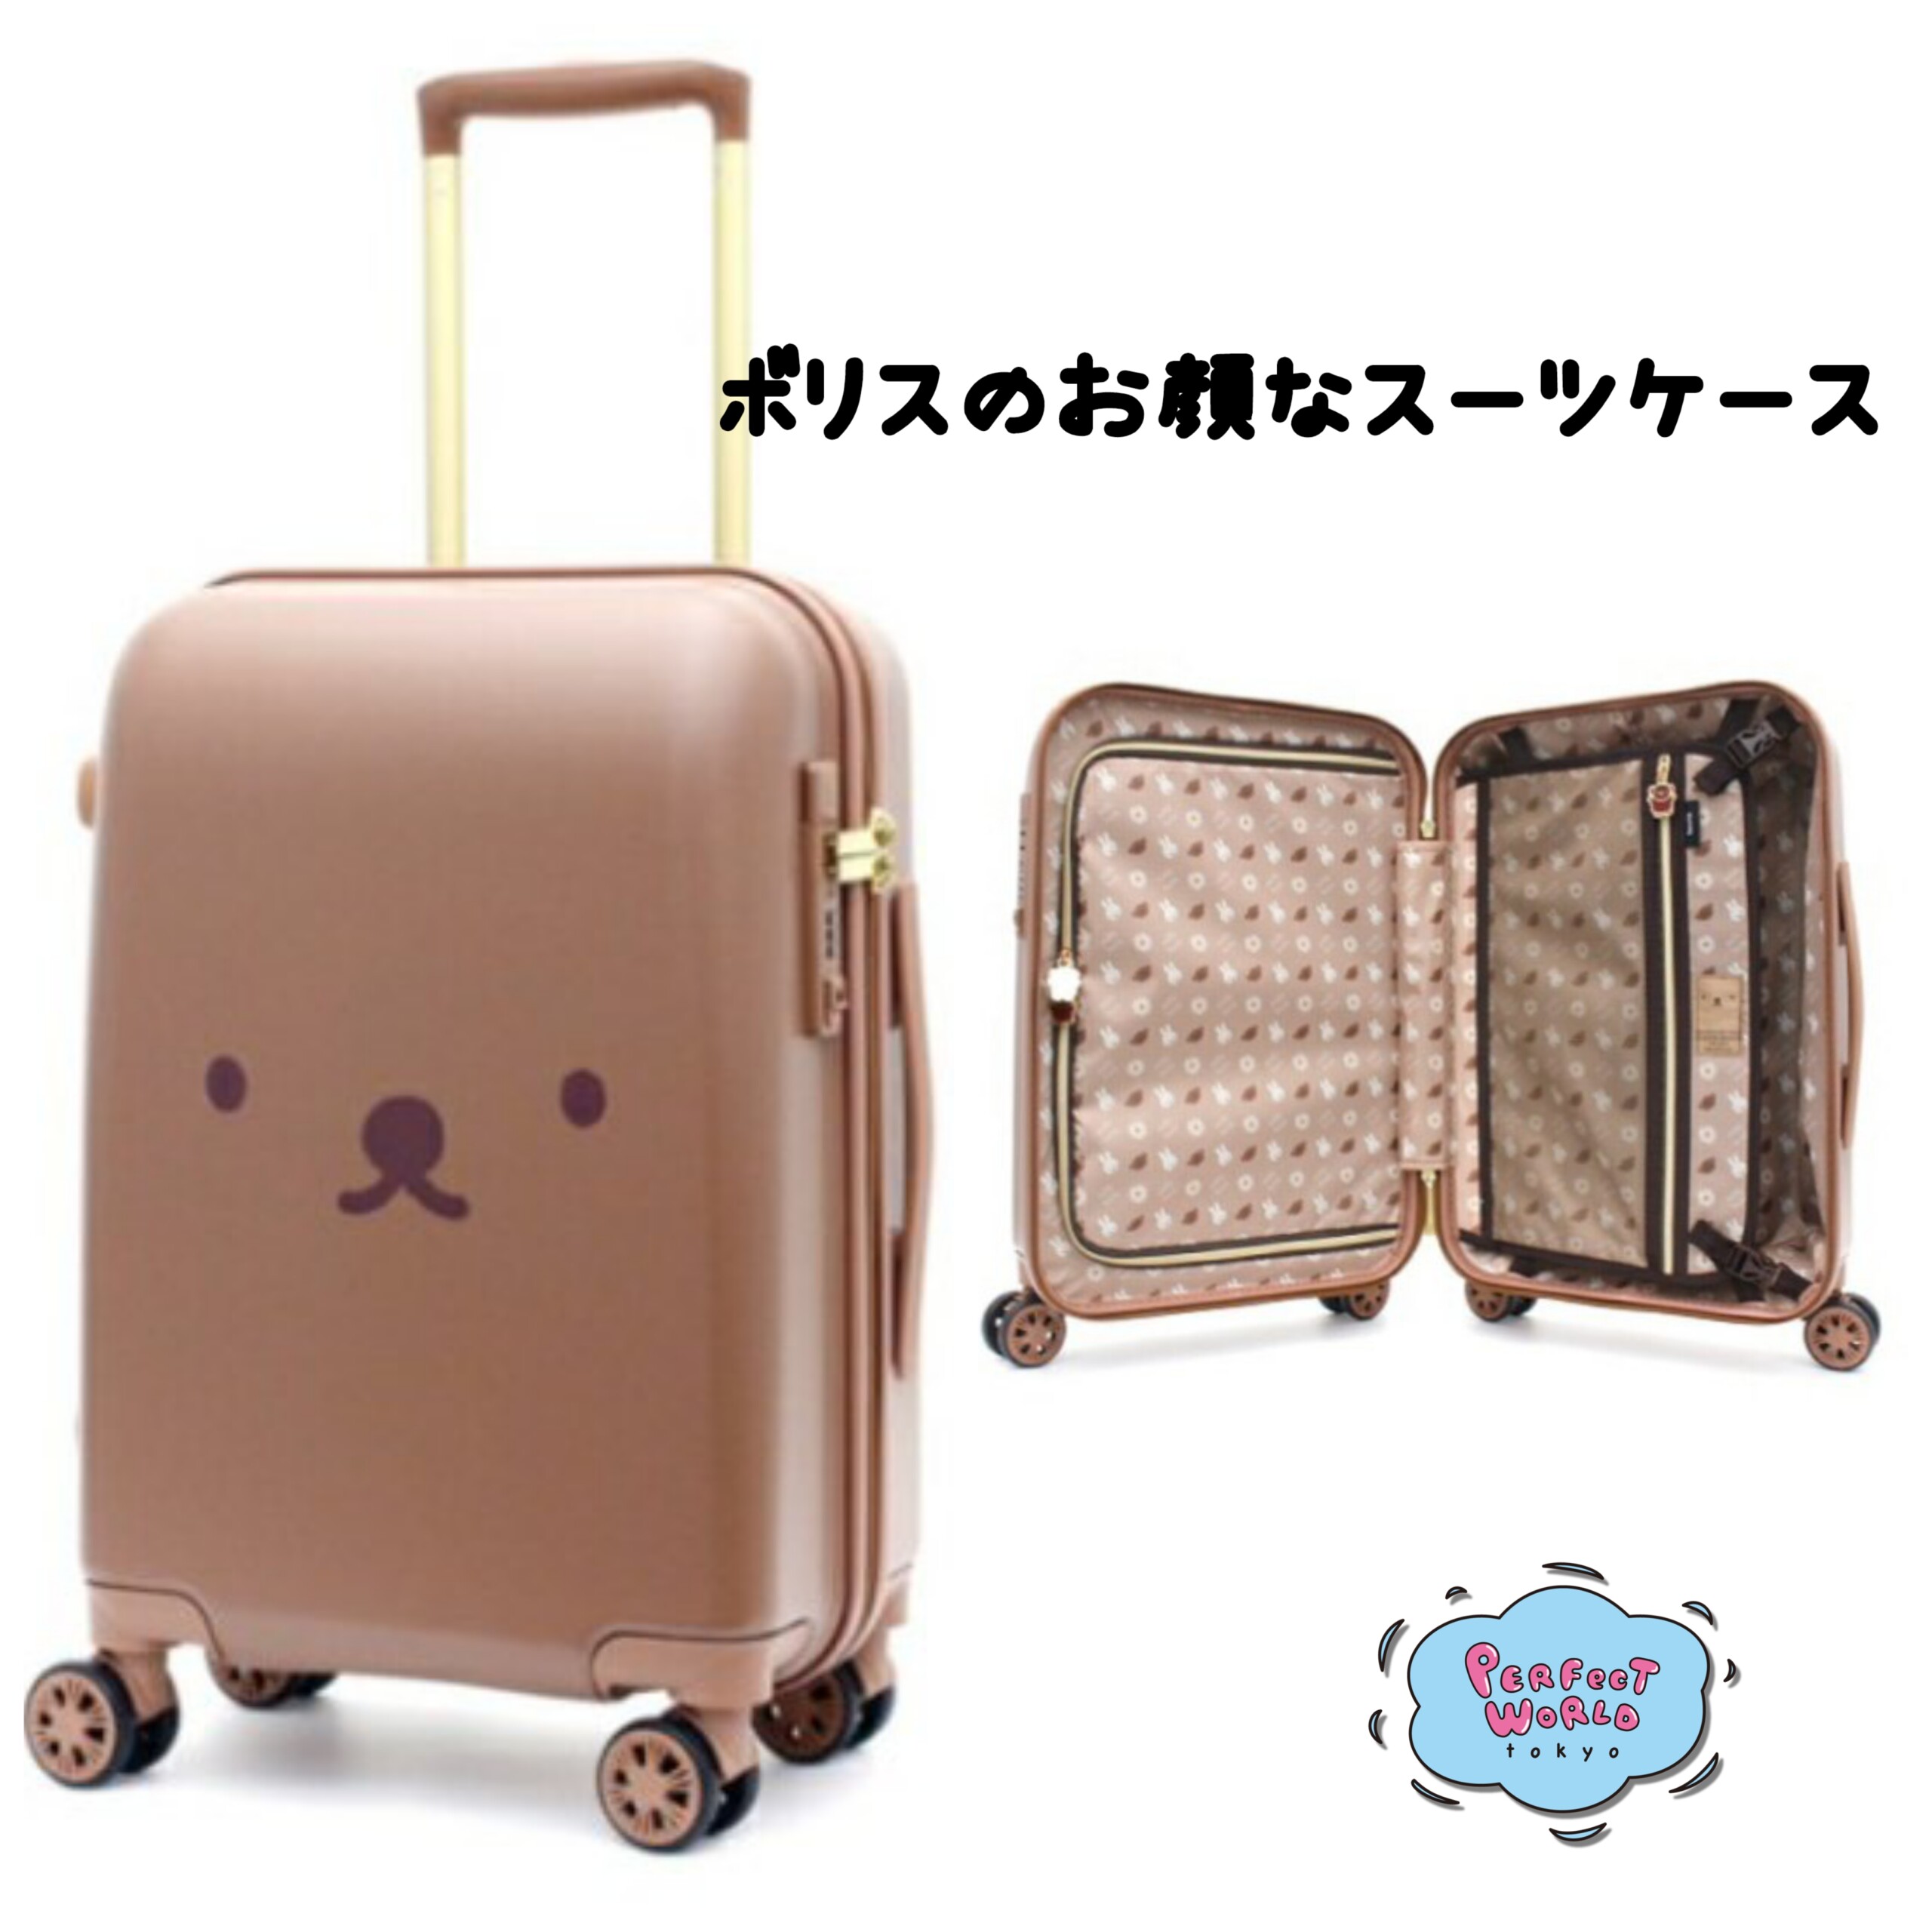 ボリスと旅に出る！フェイスデザインが目を引くスーツケース | Perfect